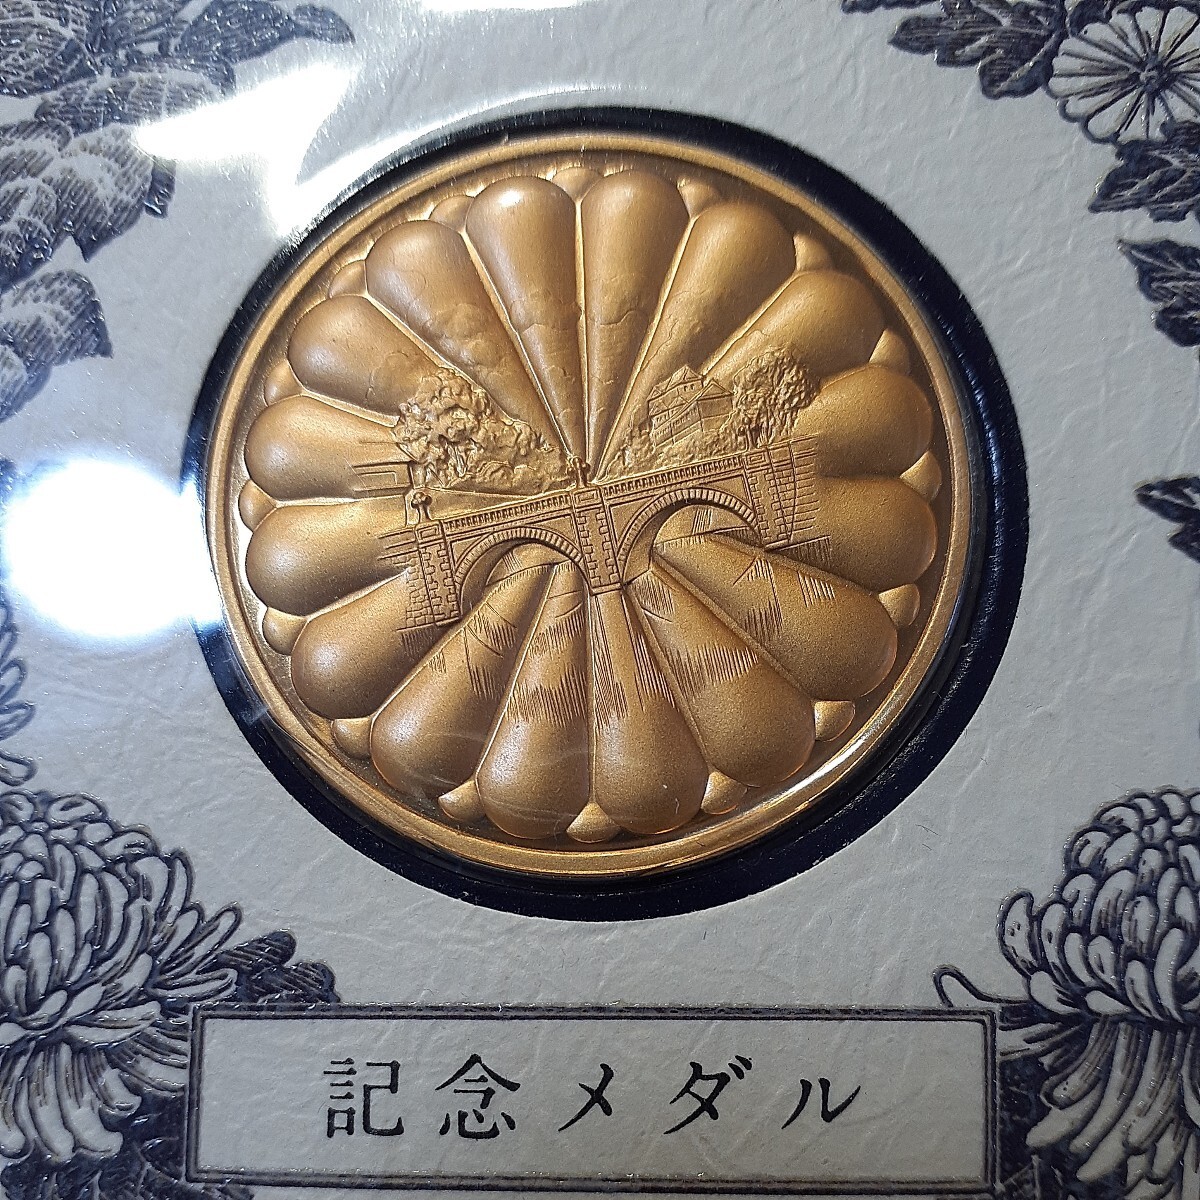 (昭和)天皇皇后両陛下御大婚六十年記念メダル(純金仕上げブロンズ製)・切手セットの画像1